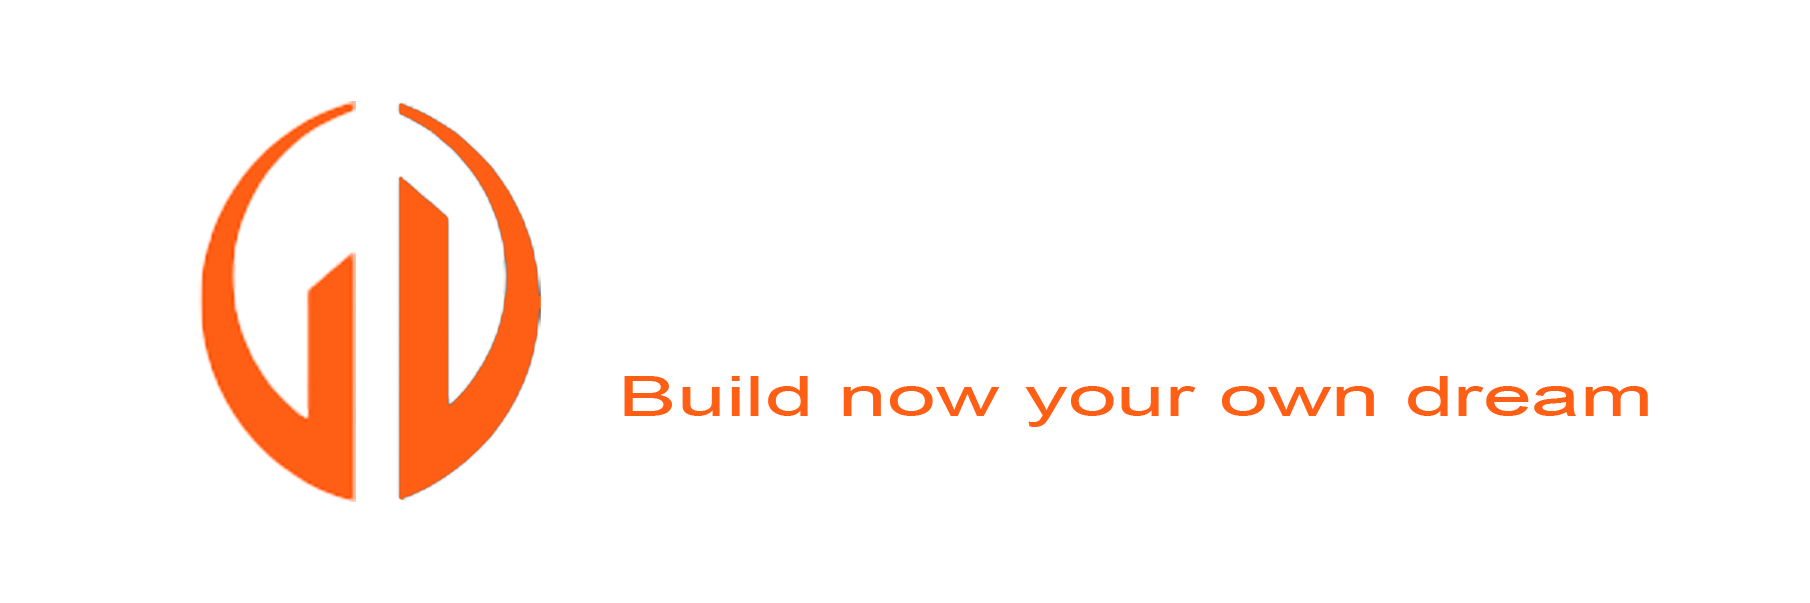 Golden Construct